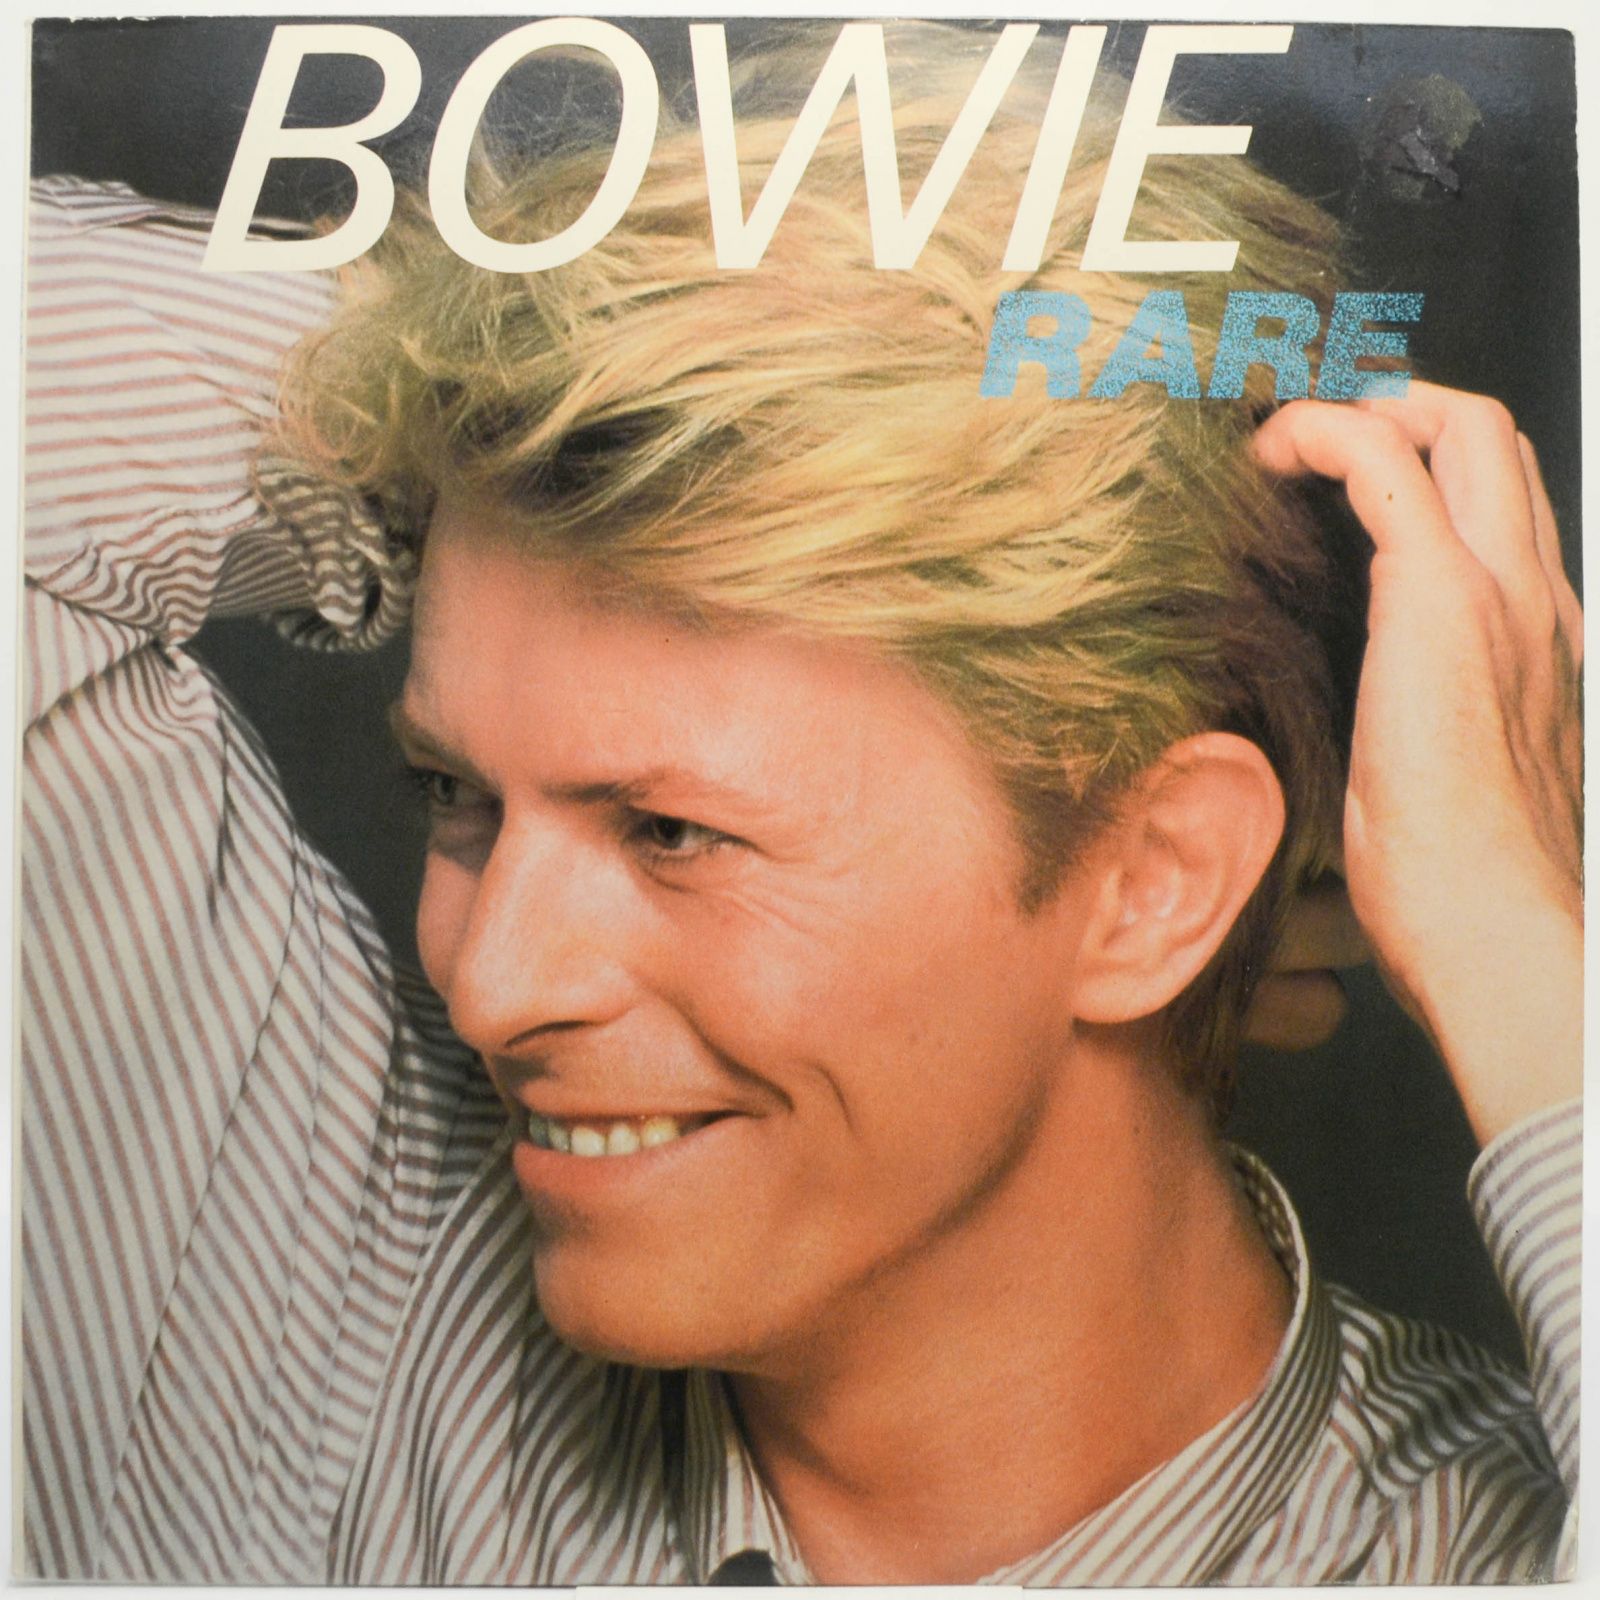 Bowie — Rare, 1982